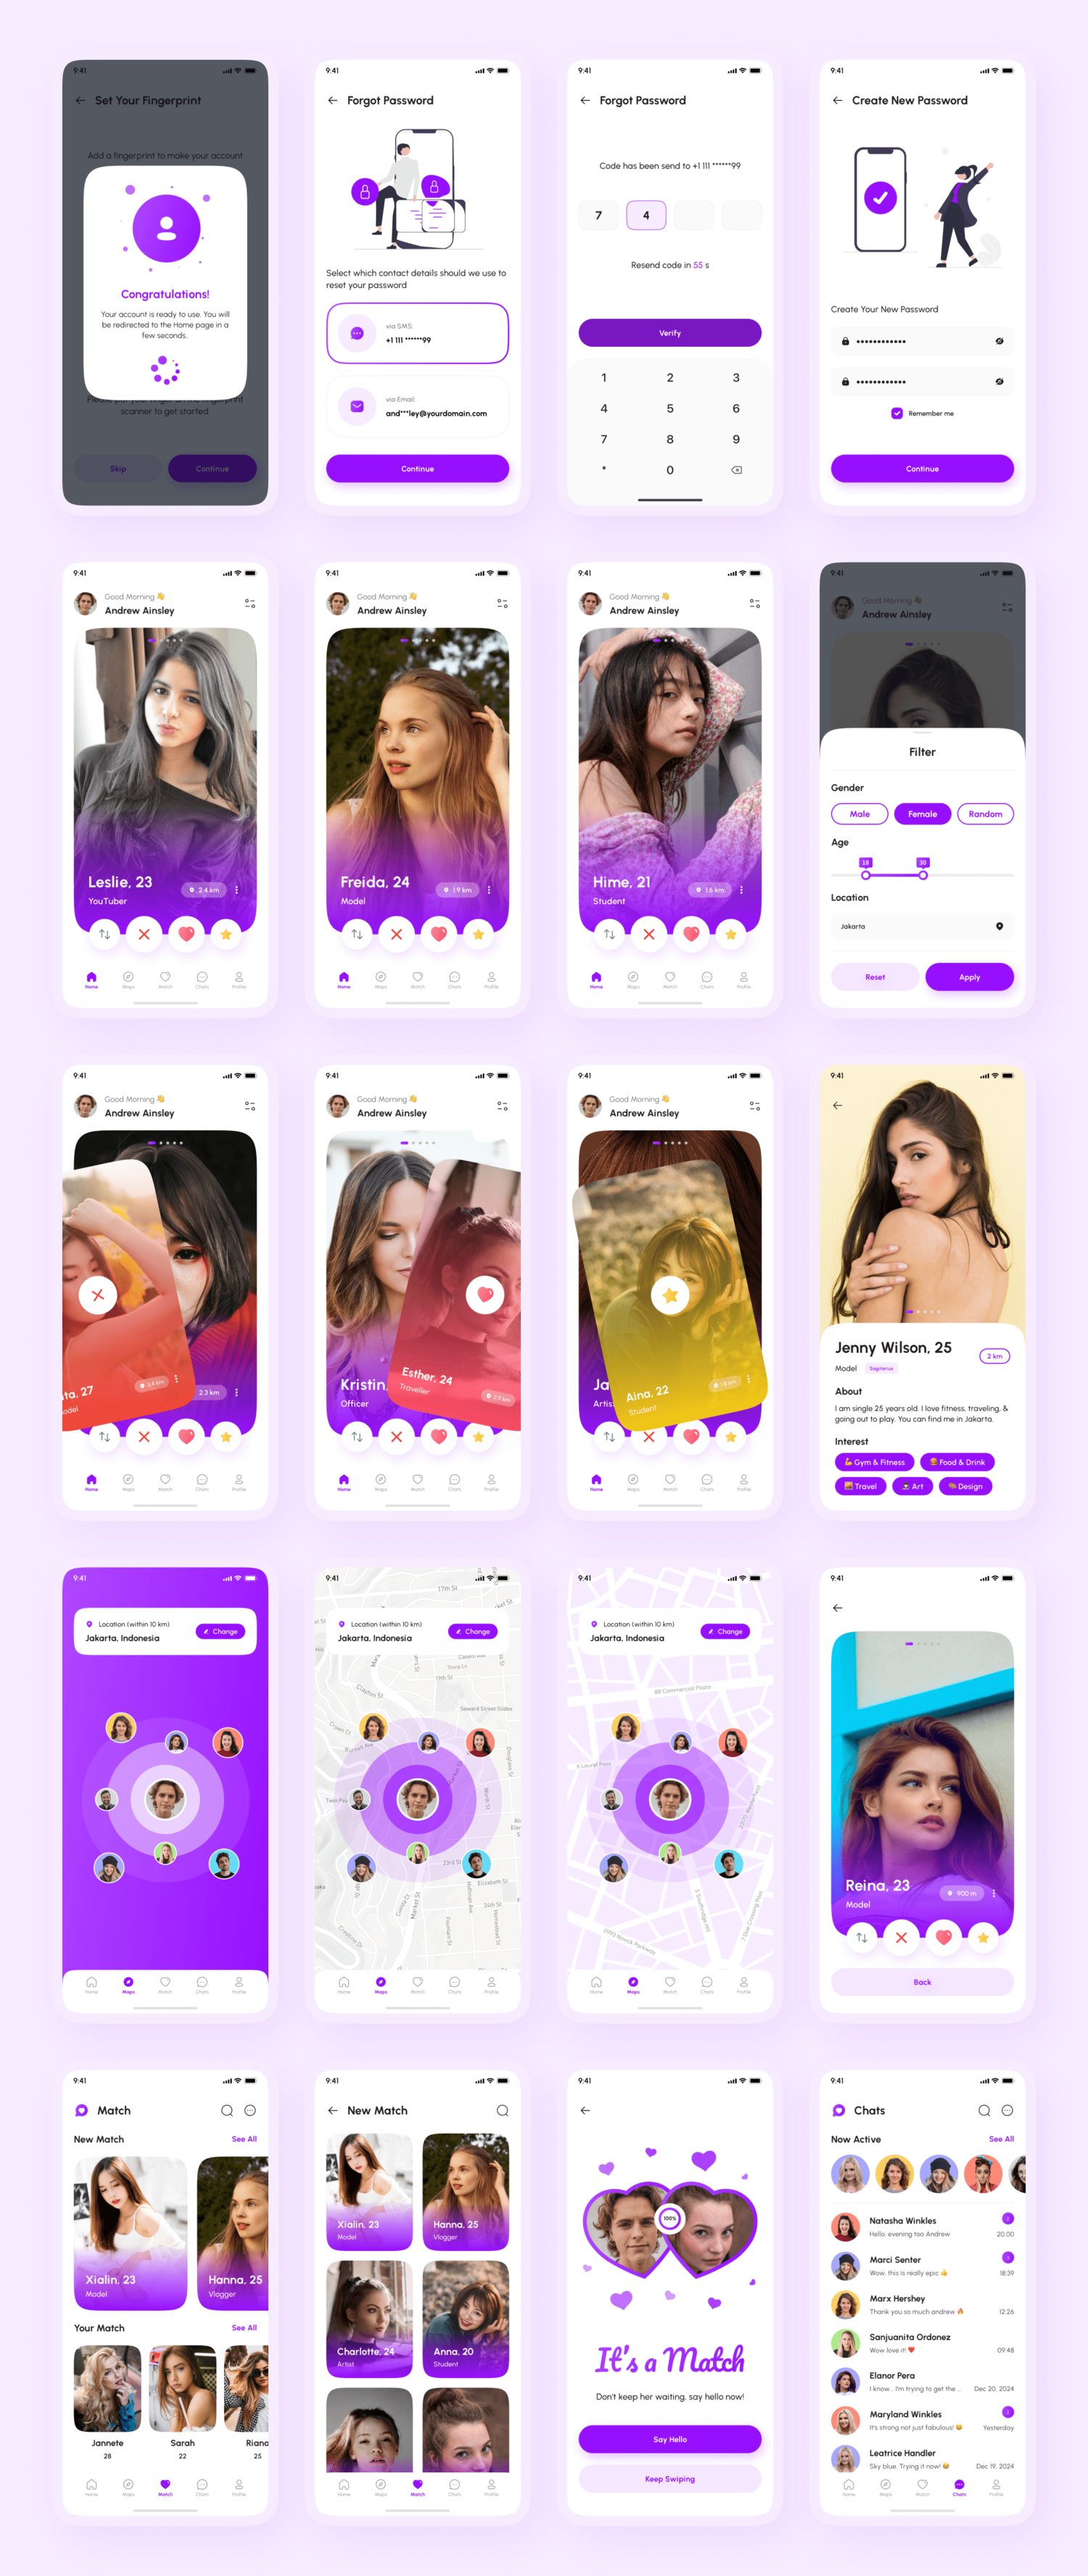 3528 130屏国外在线交友聊天约会见面社交媒体app界面设计紫色ui套件模板 Hume – Dating App UI Kit